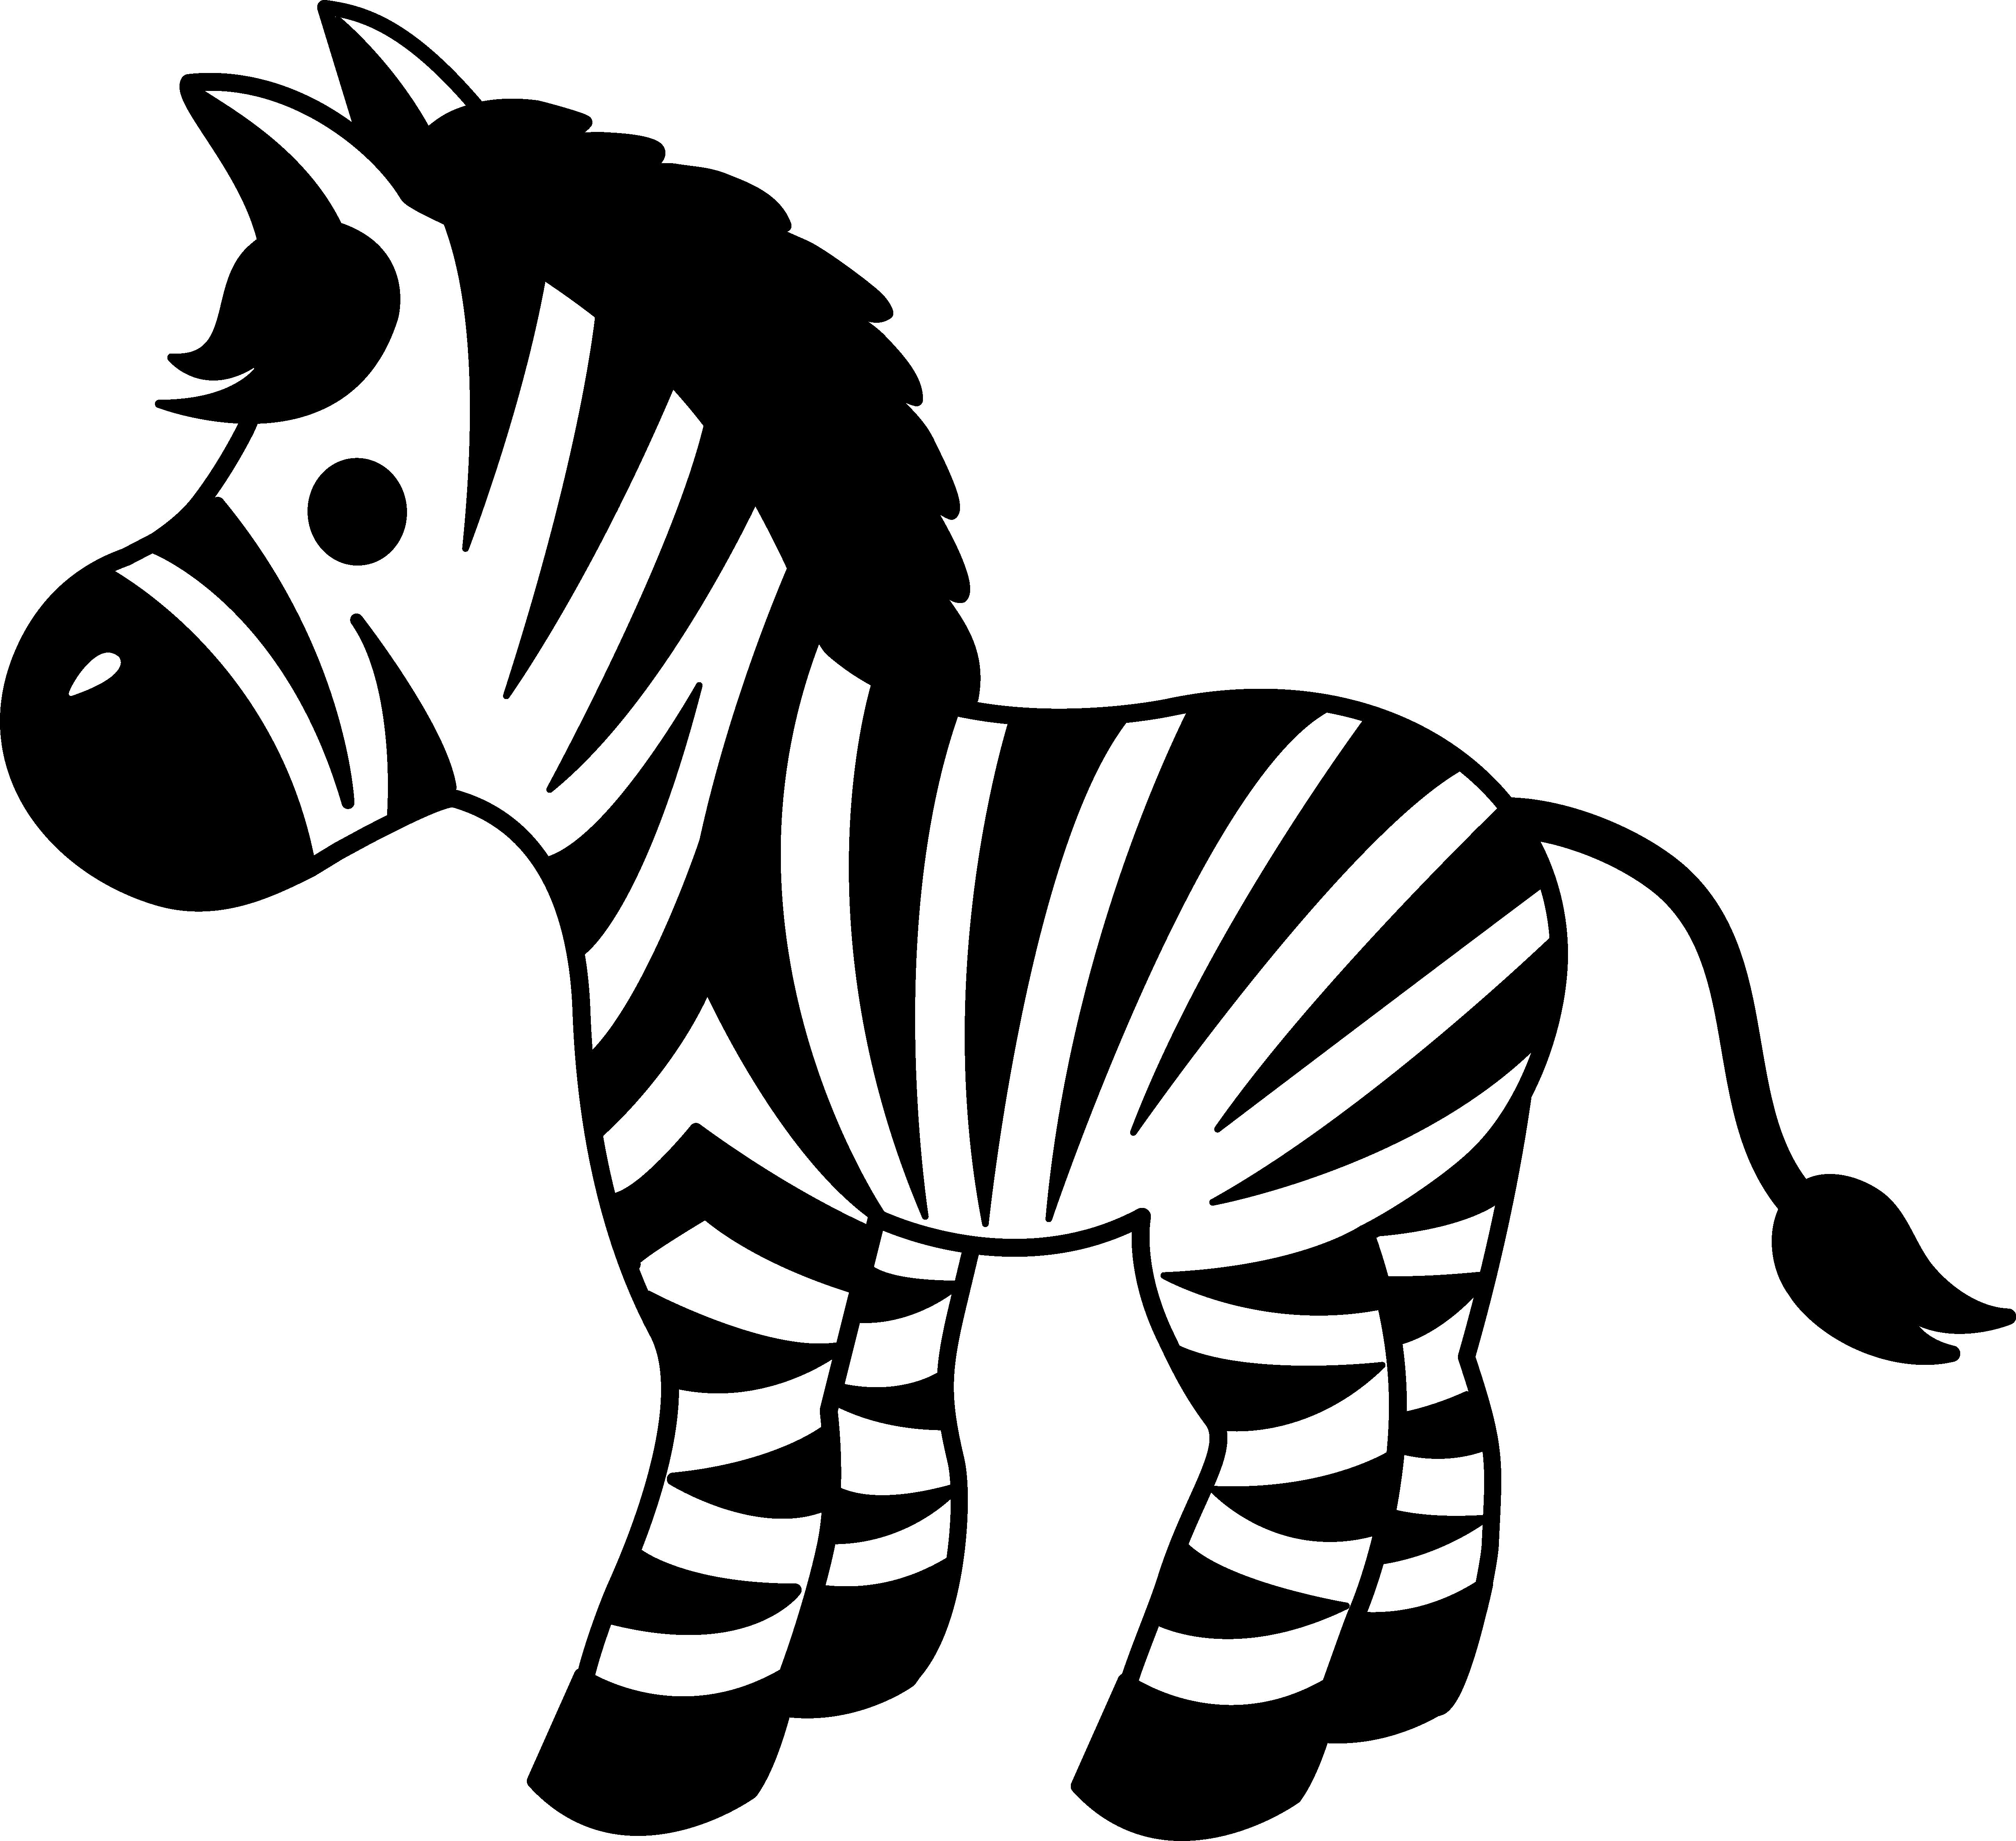 Cute striped zebra.